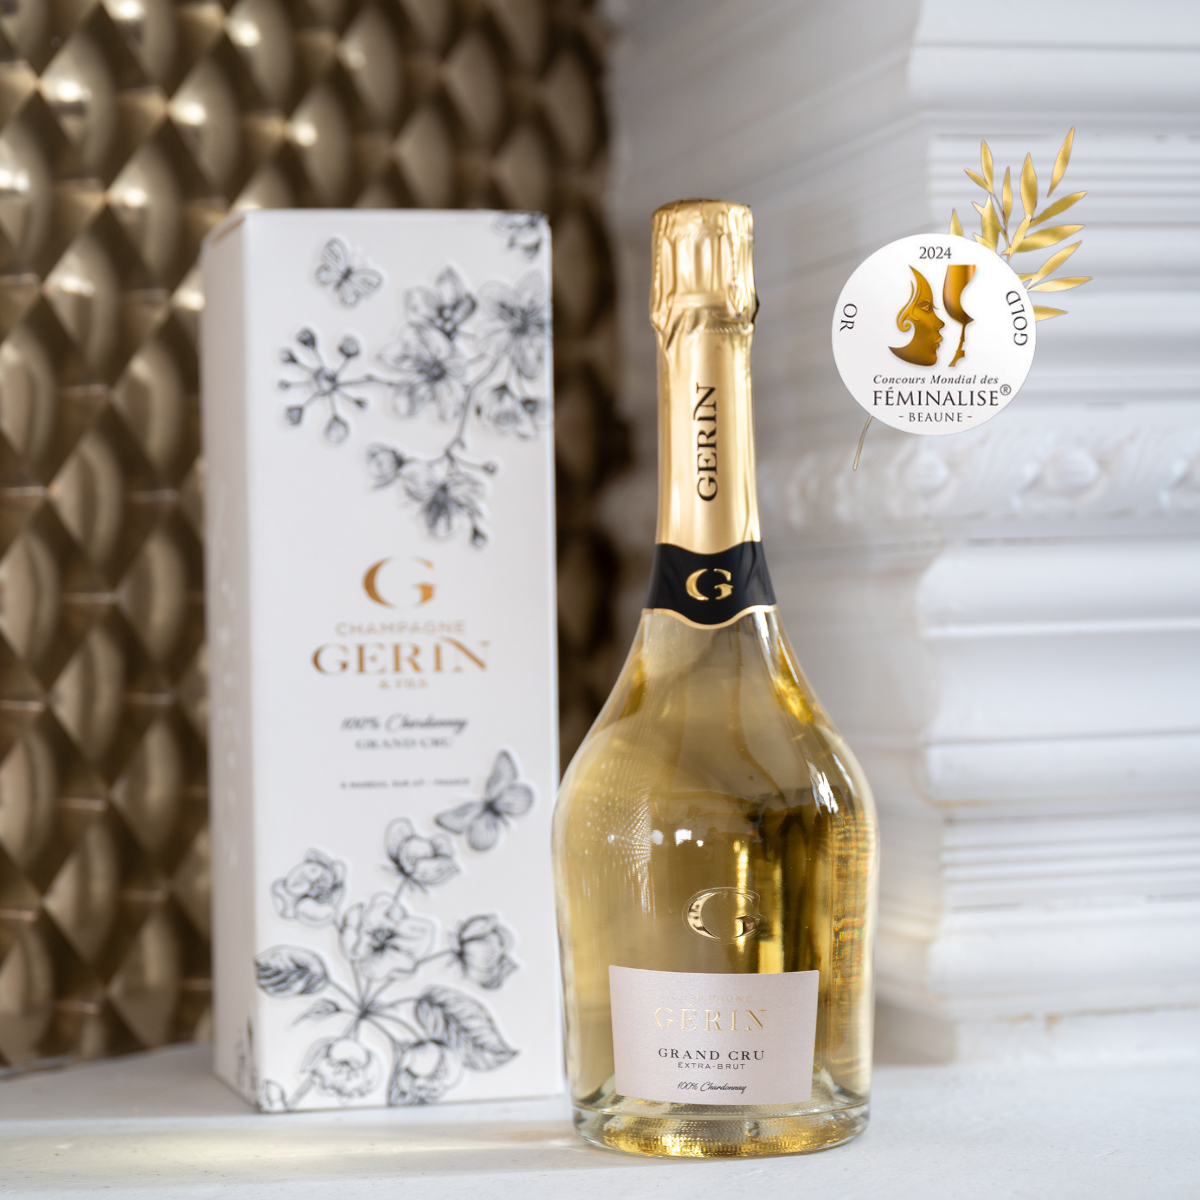 Double consécration : Notre Grand Cru 100% Chardonnay remporte une médaille au concours Féminalise